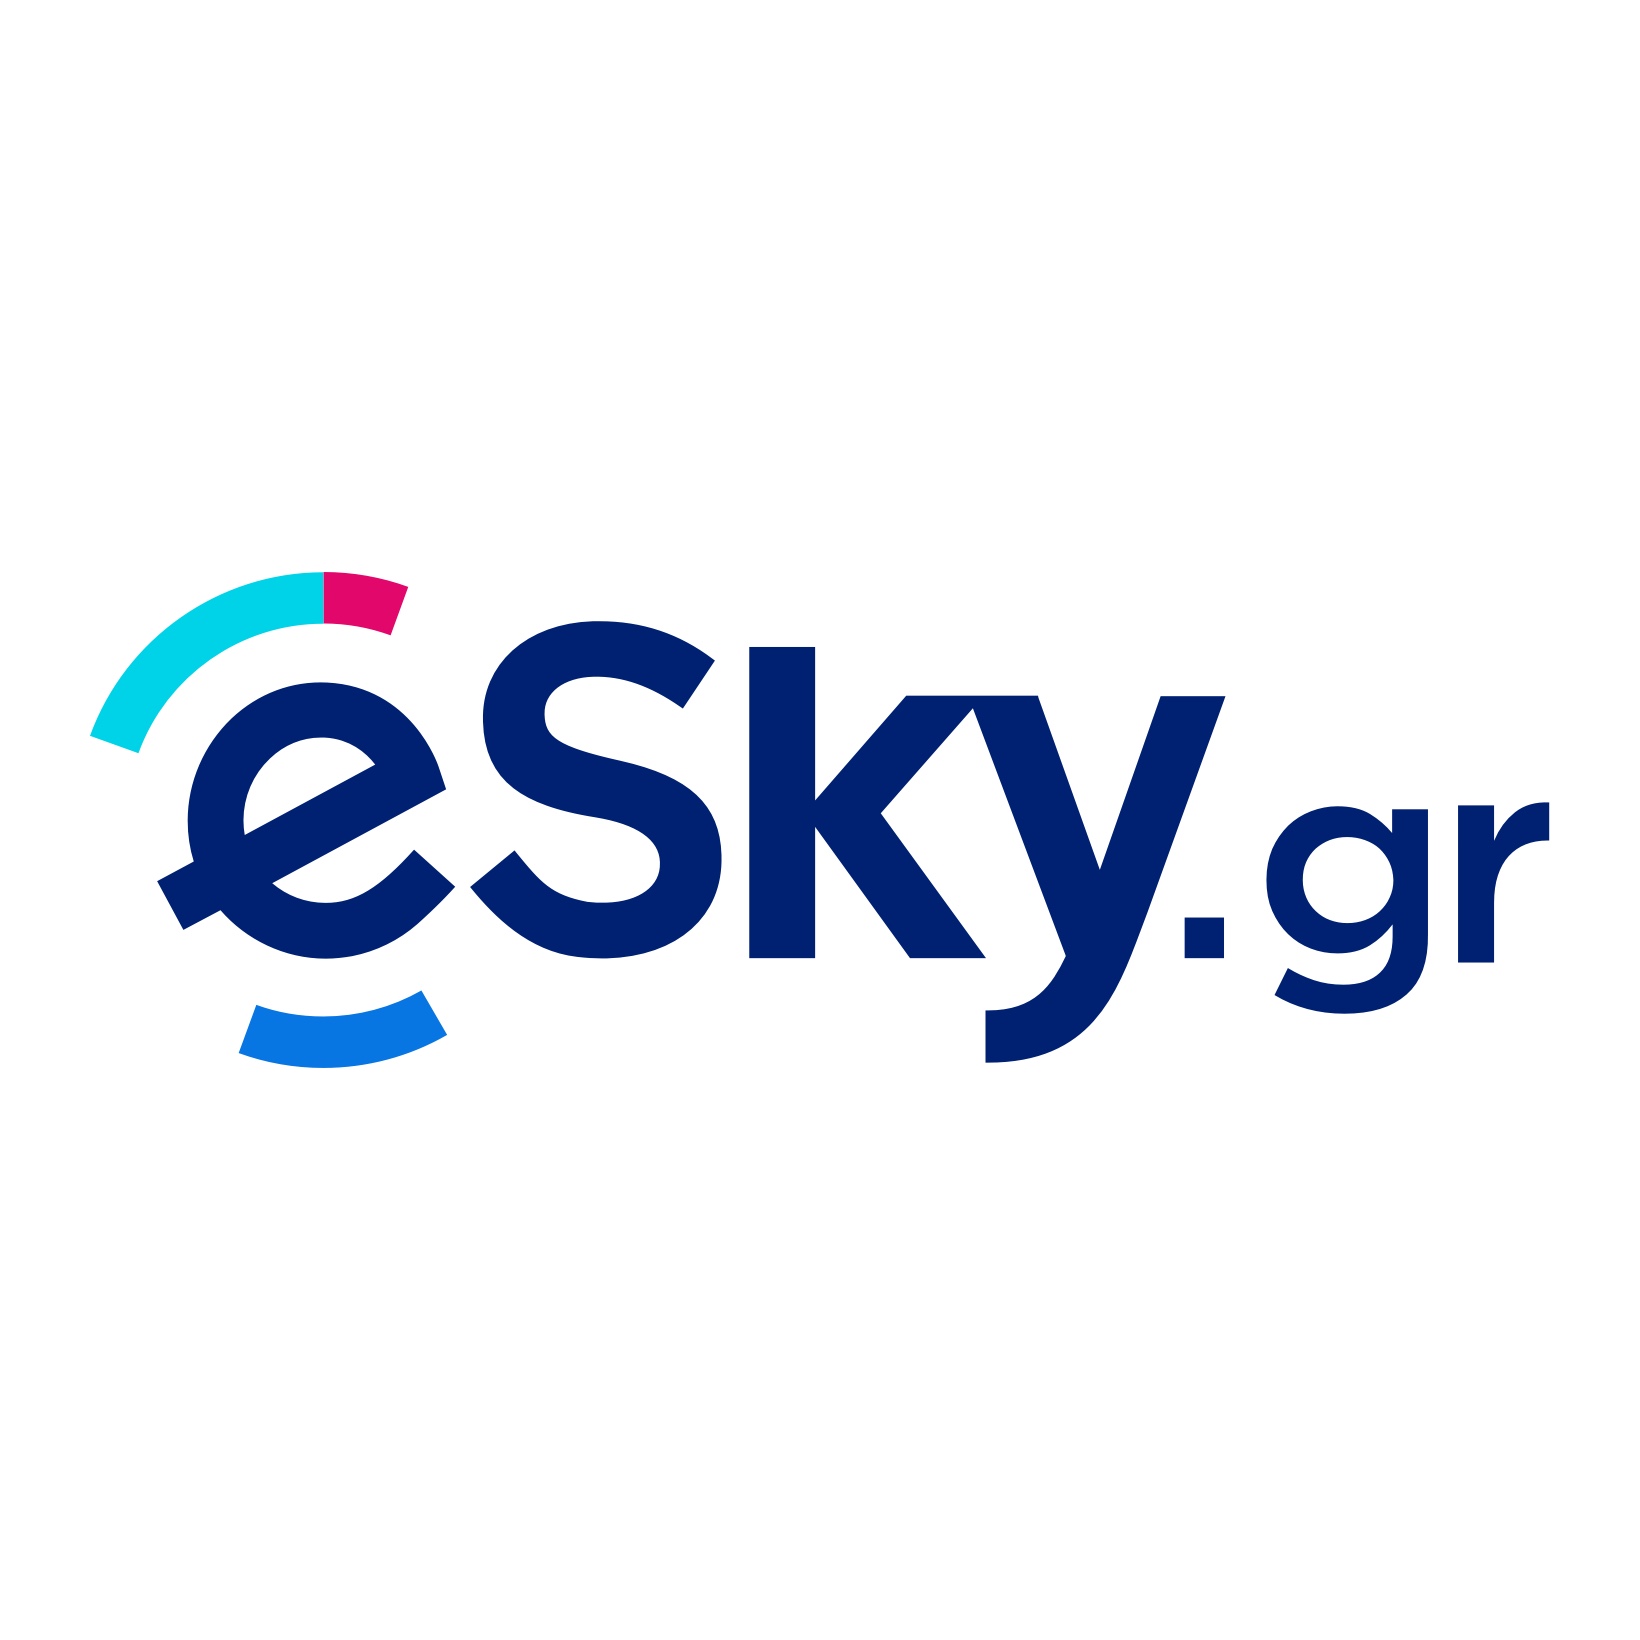 (c) Esky.gr